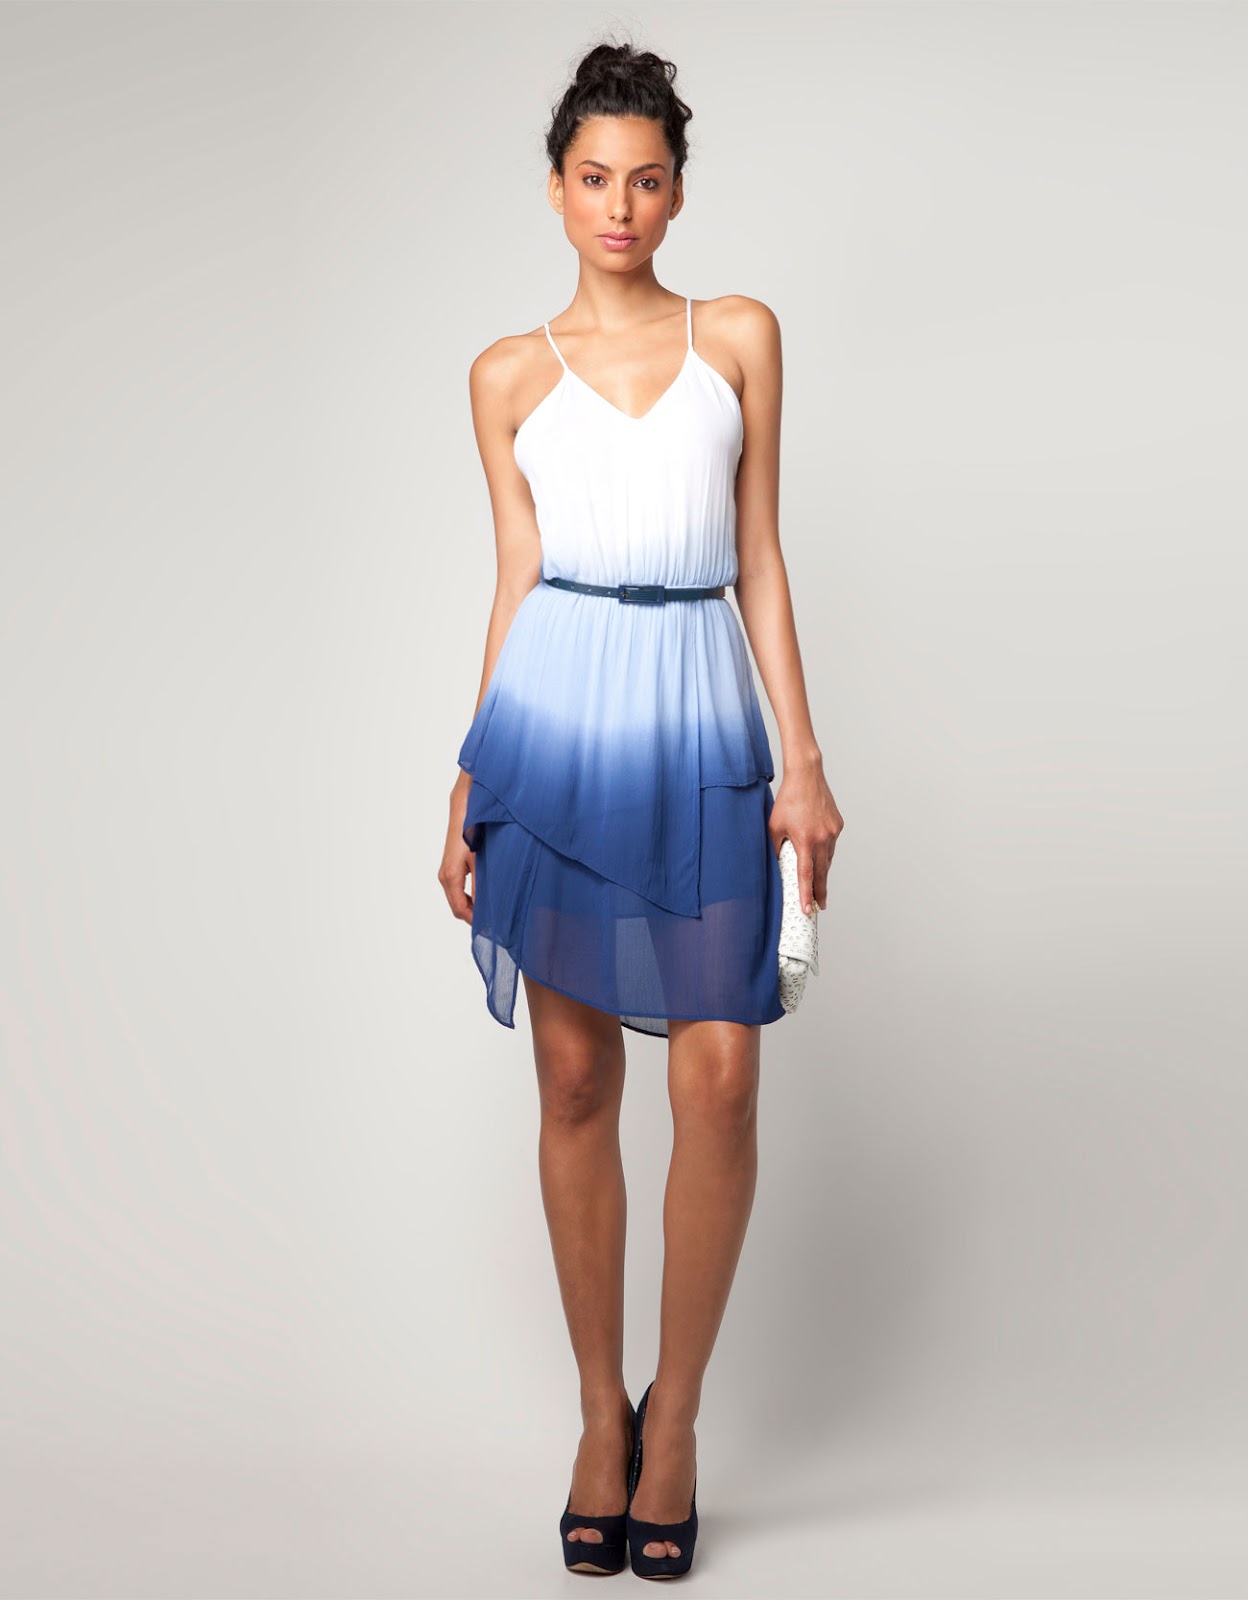 vestido tiene dos combinaciones de colores blanco y azul el color azul ...